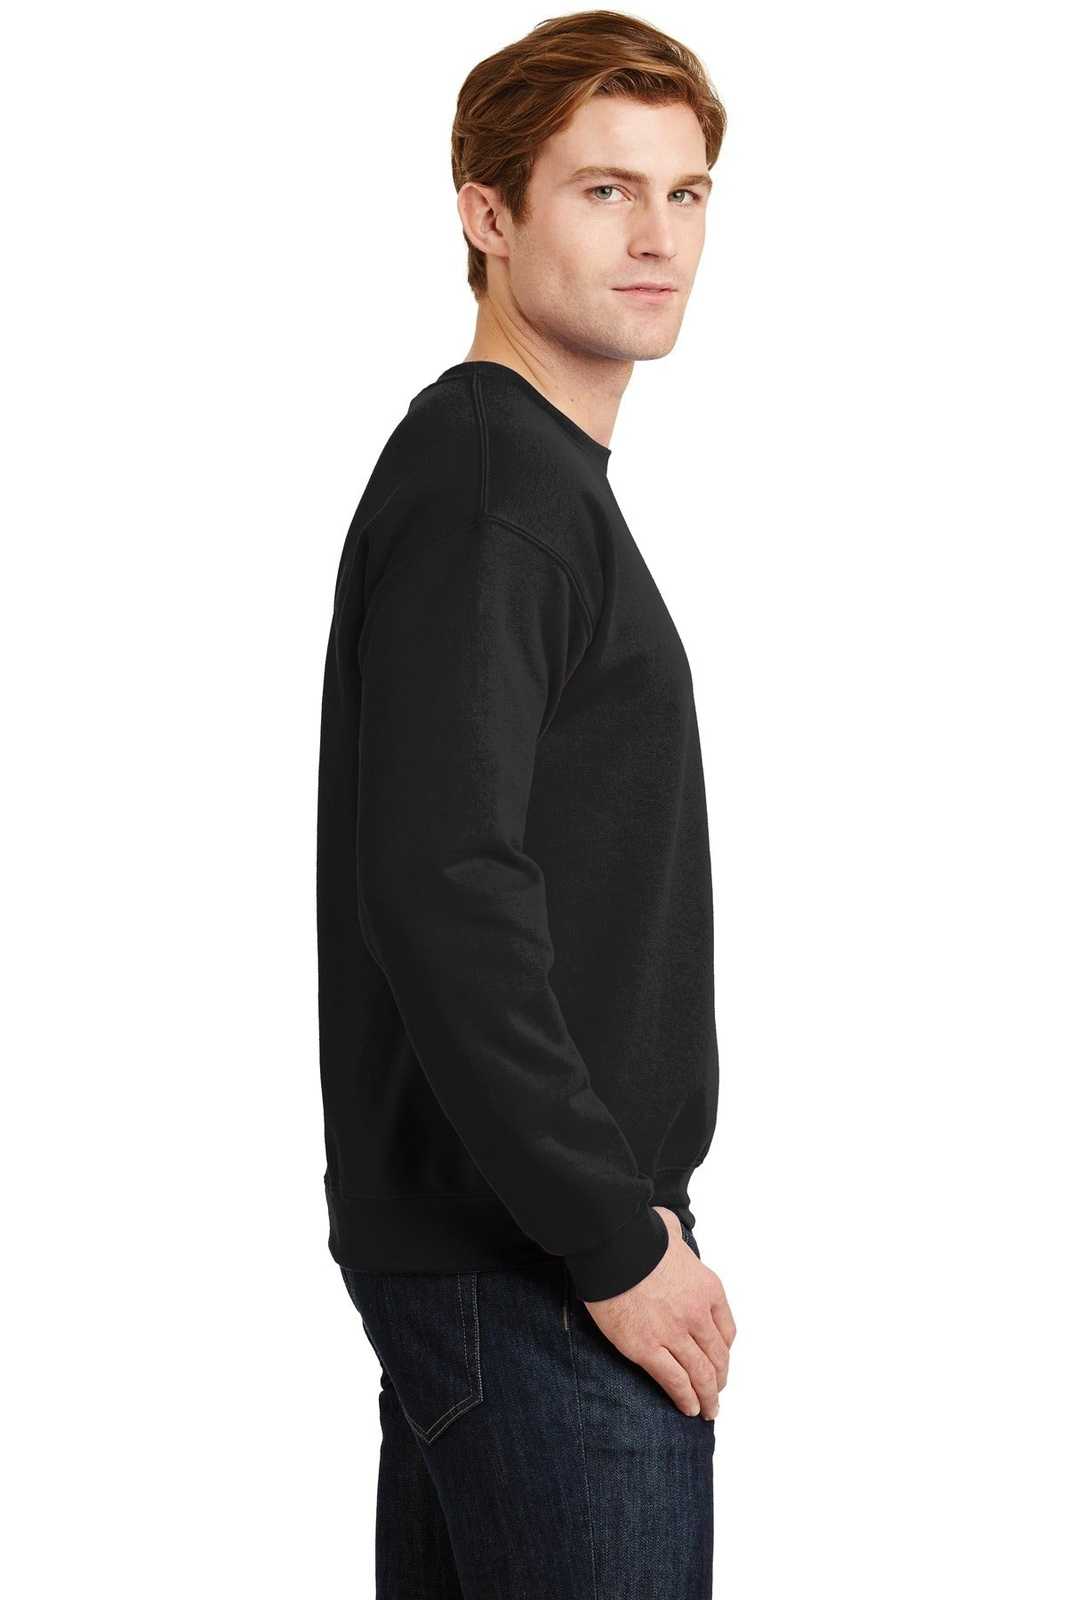 Gildan 18000 Heavy Blend Crewneck Sweatshirt - Black - HIT a Double